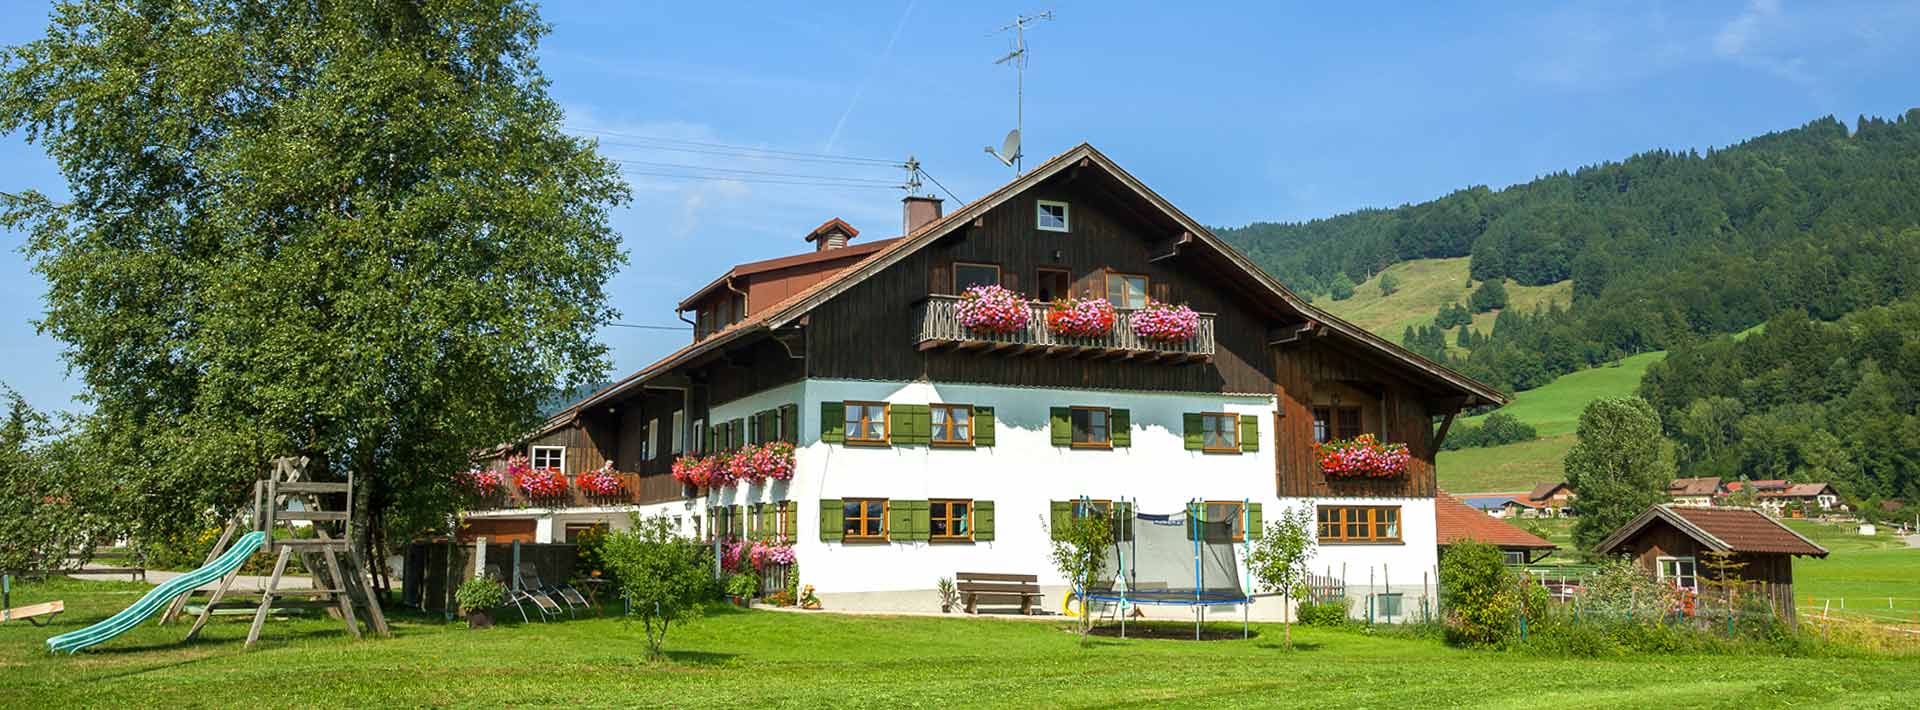 Hagenauer Hof am Alpsee bei Immenstadt